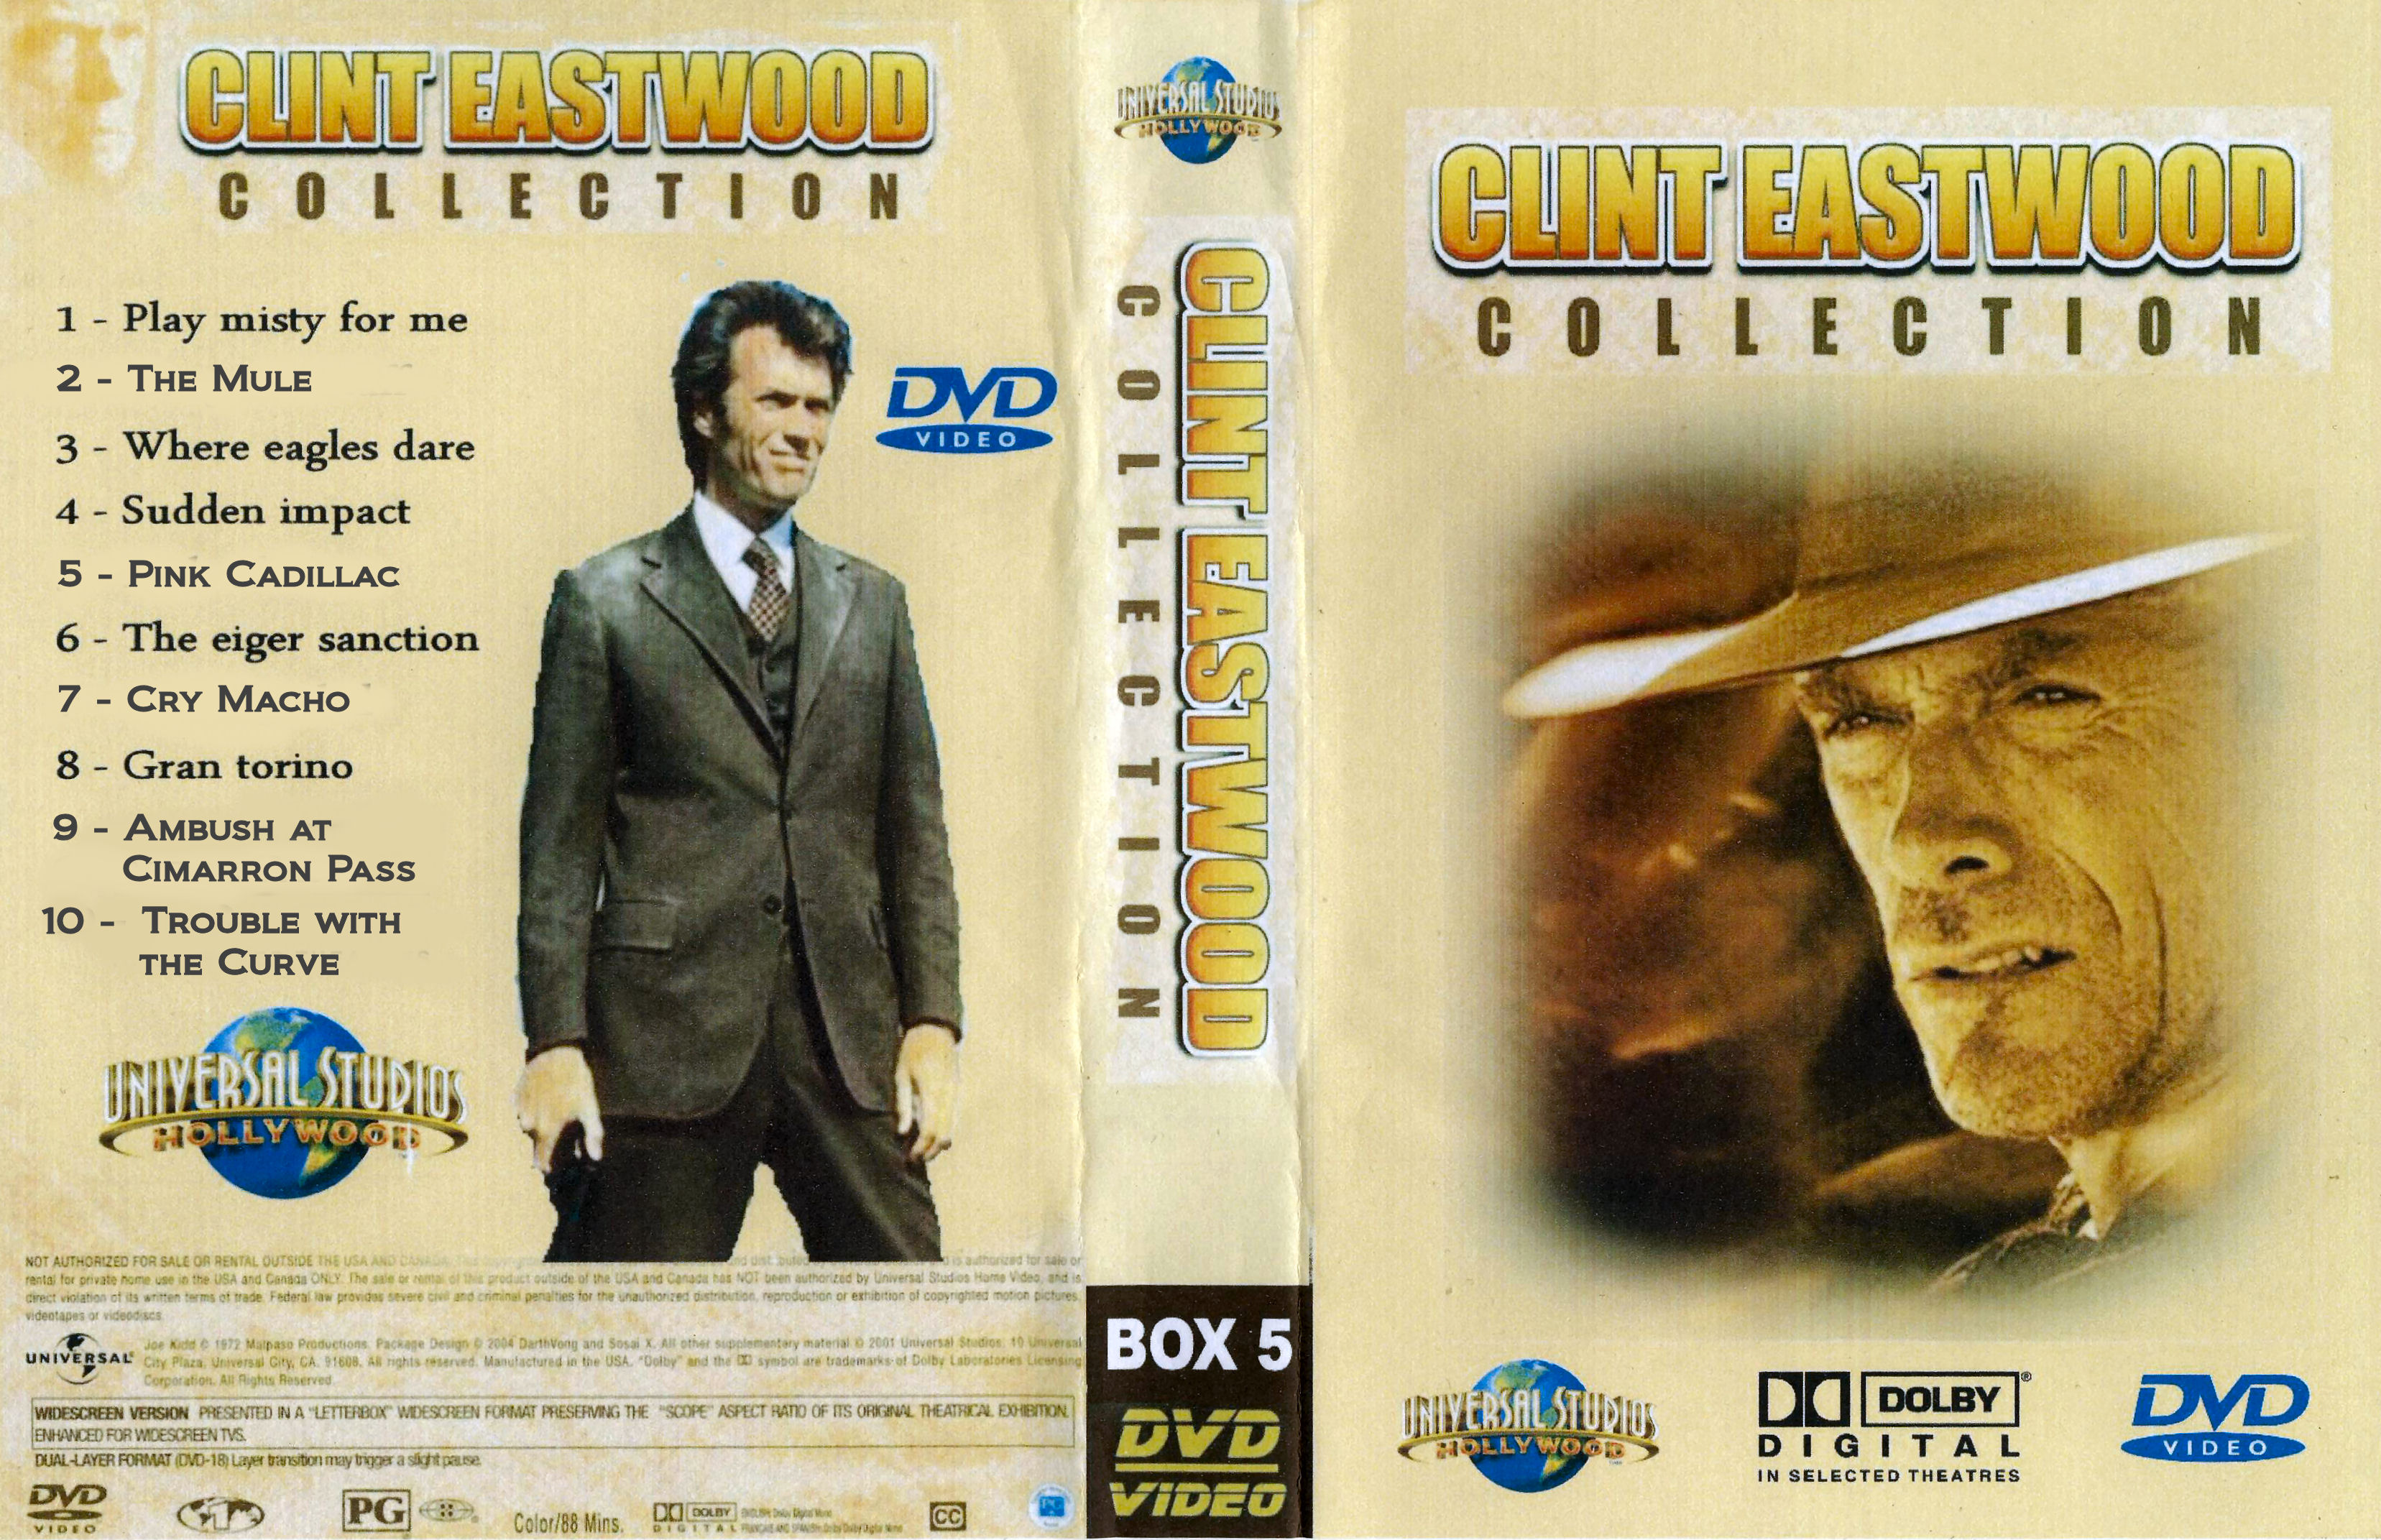 Clint Eastwood Collectie Box 5 DvD 4 van 5